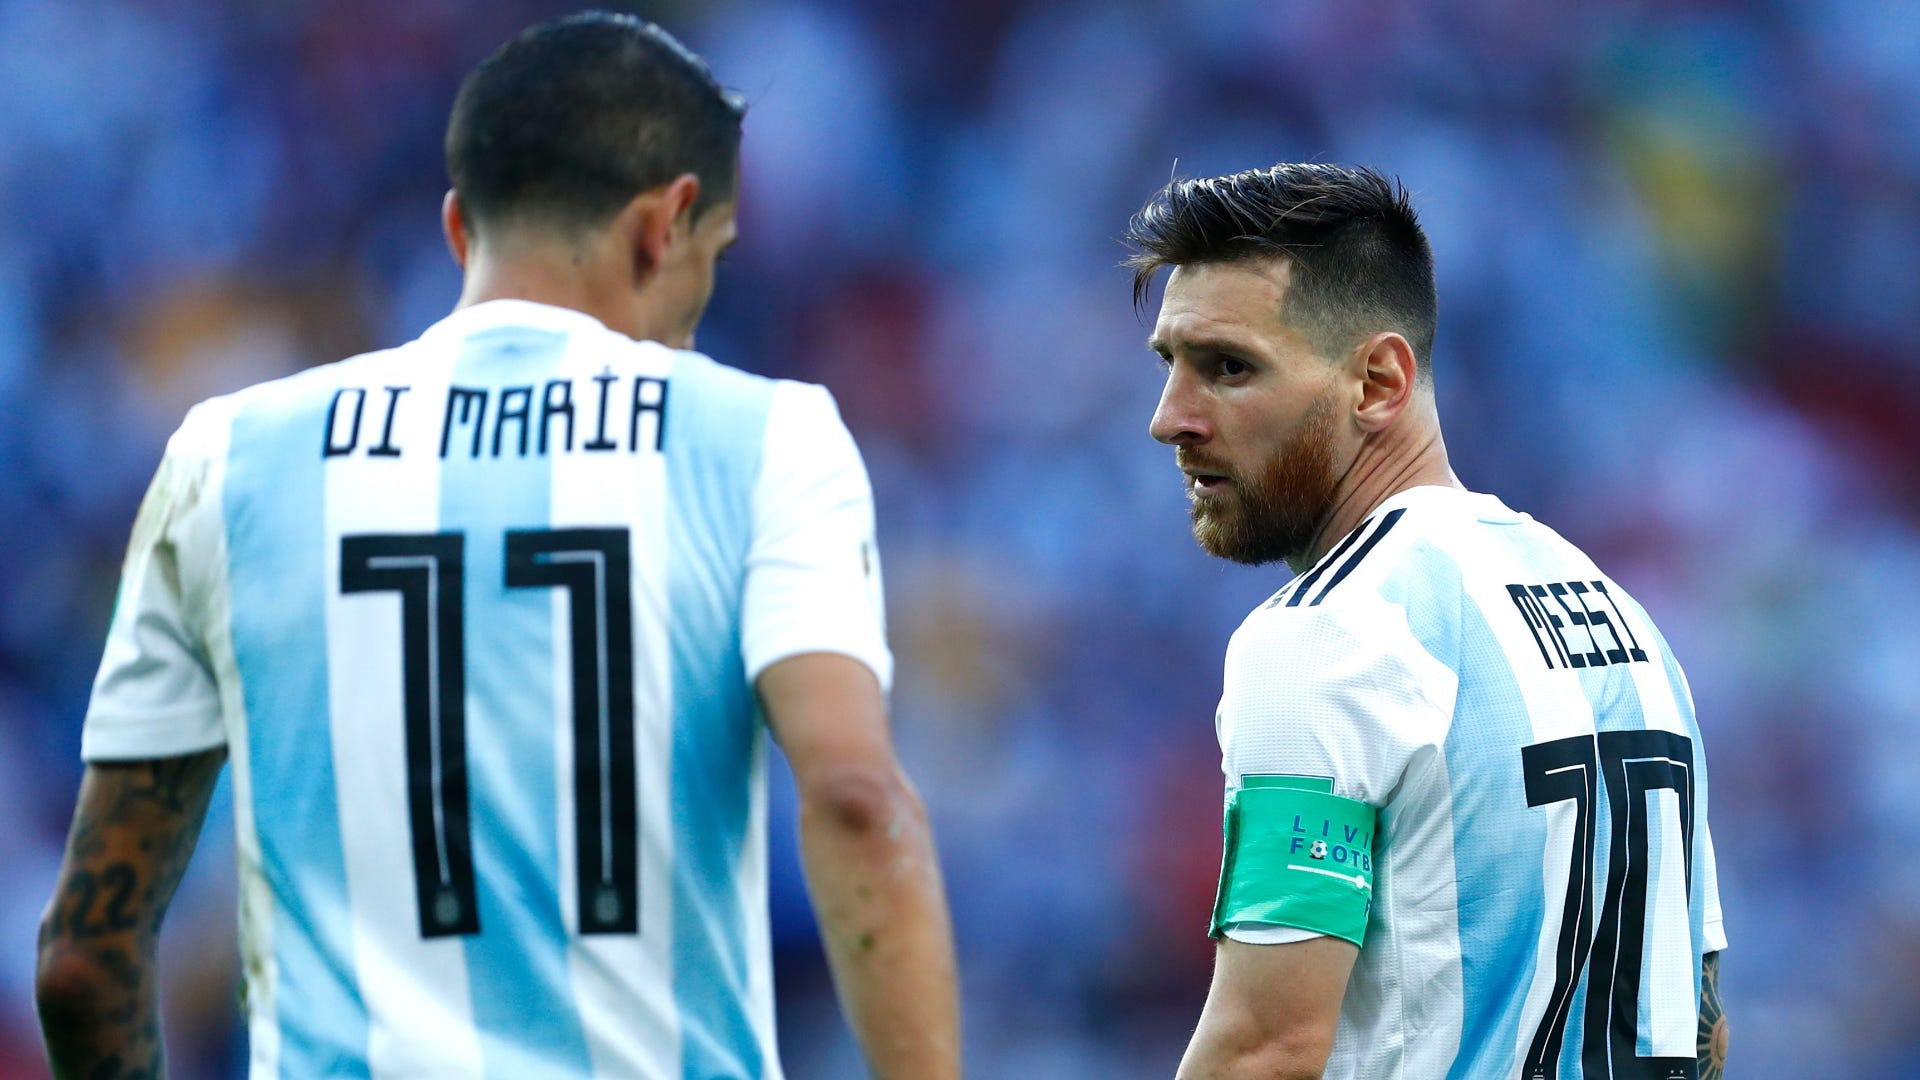 Xem đội tuyển Argentina và Messi thi đấu để tận hưởng niềm kiêu hãnh của dân tộc Argentina trong môn thể thao vua.